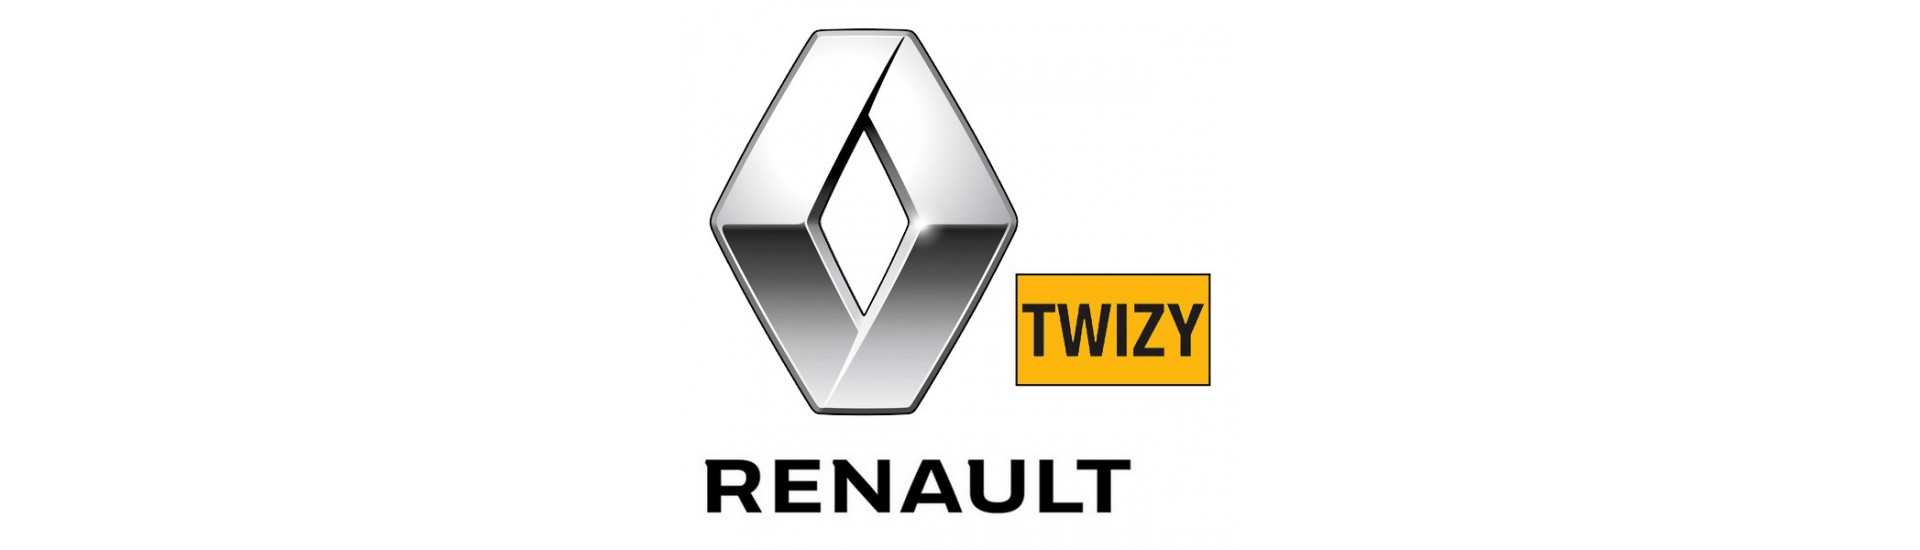 Rollo de suspensión al mejor precio para coche sin permiso Renault